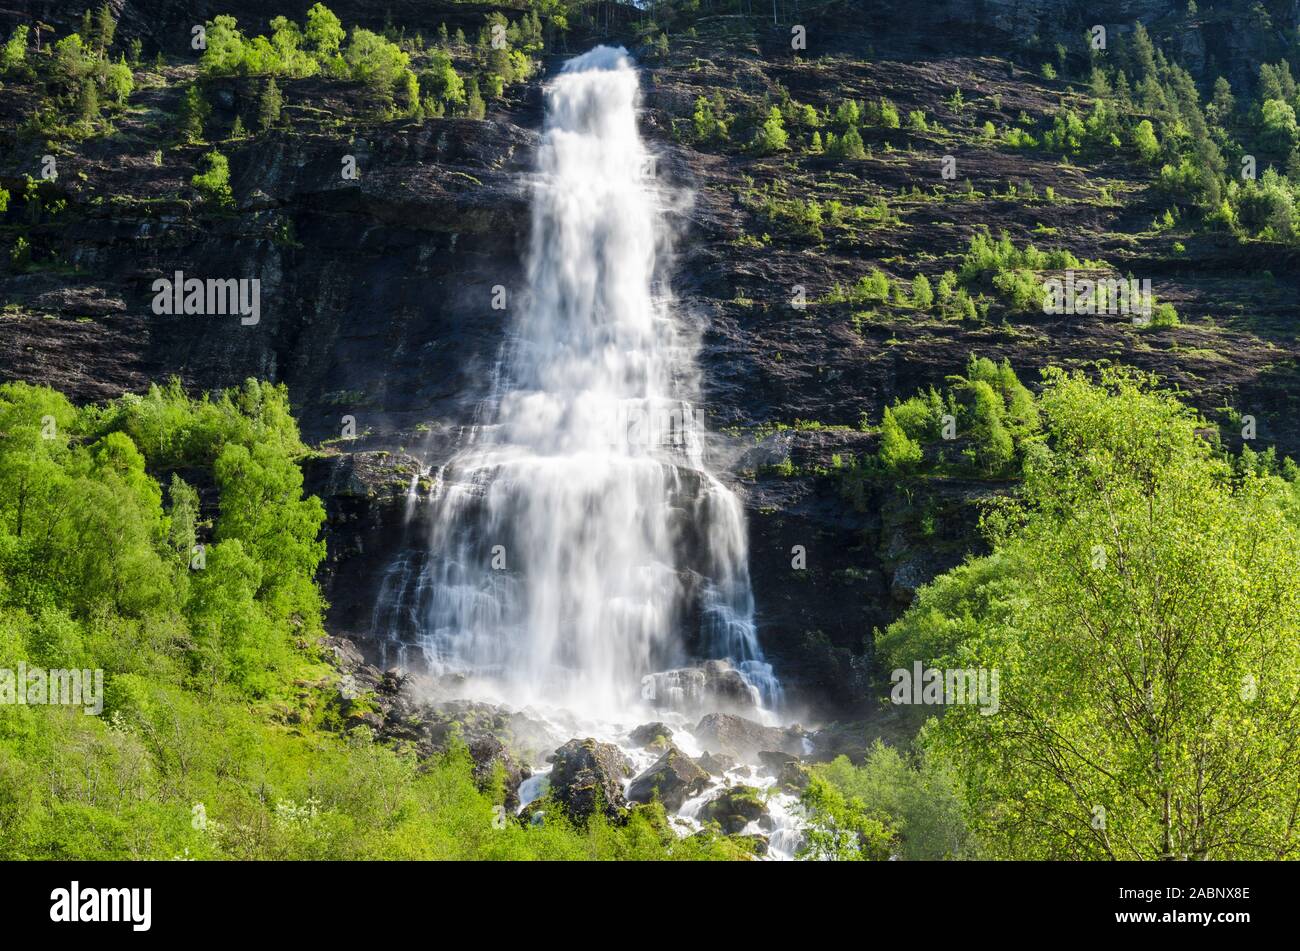 Wasserfall, Fortundalen (Fortunsdalen), Luster, Sogn og Fjordane Fylke, Norwegen, Mai 2012 Stock Photo